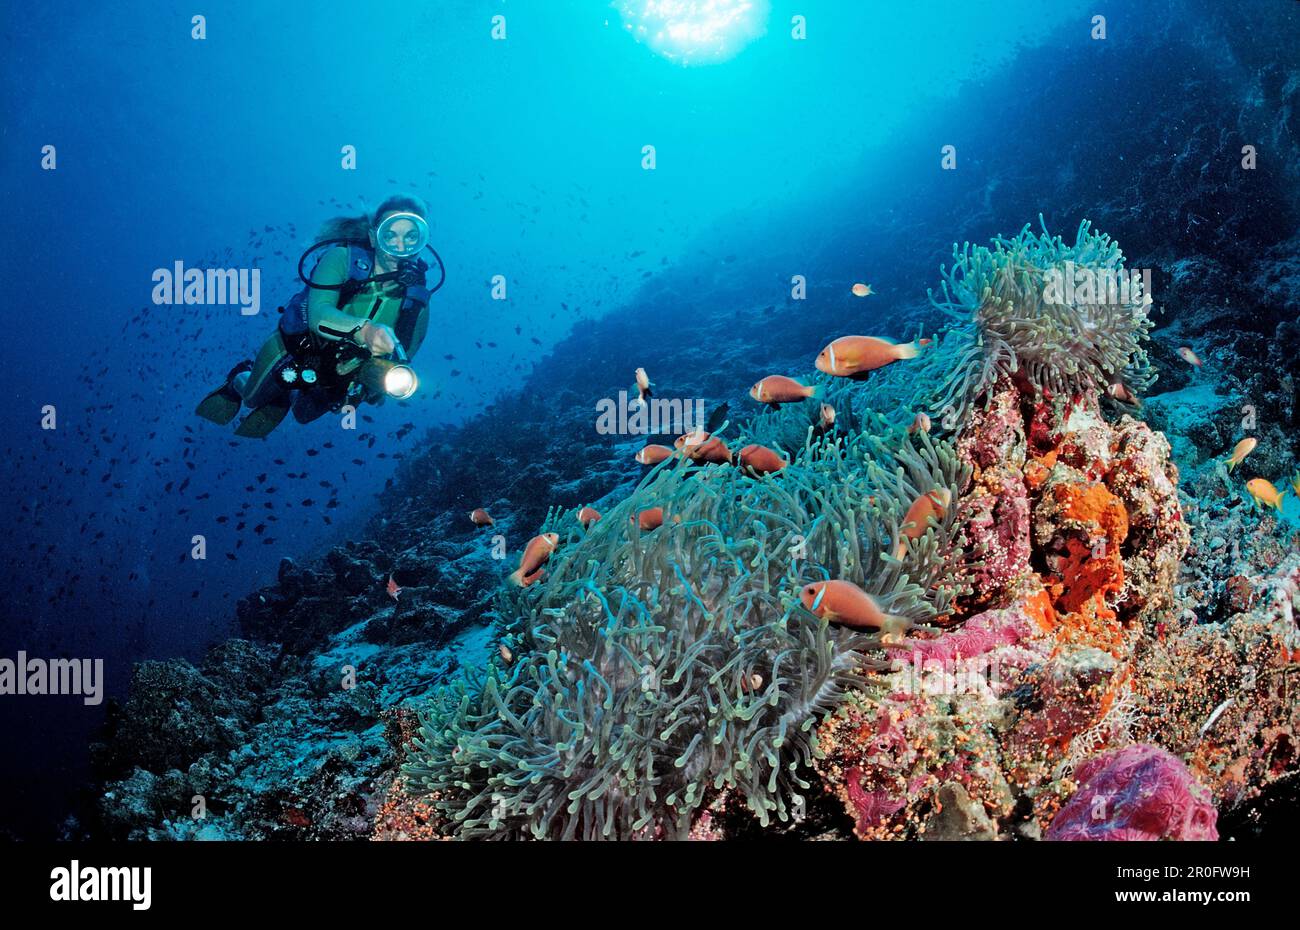 Pesci Anemoneo subacquei e Maldive, nigripe anfibi, Maldive, Oceano Indiano, Atollo di Meemu Foto Stock